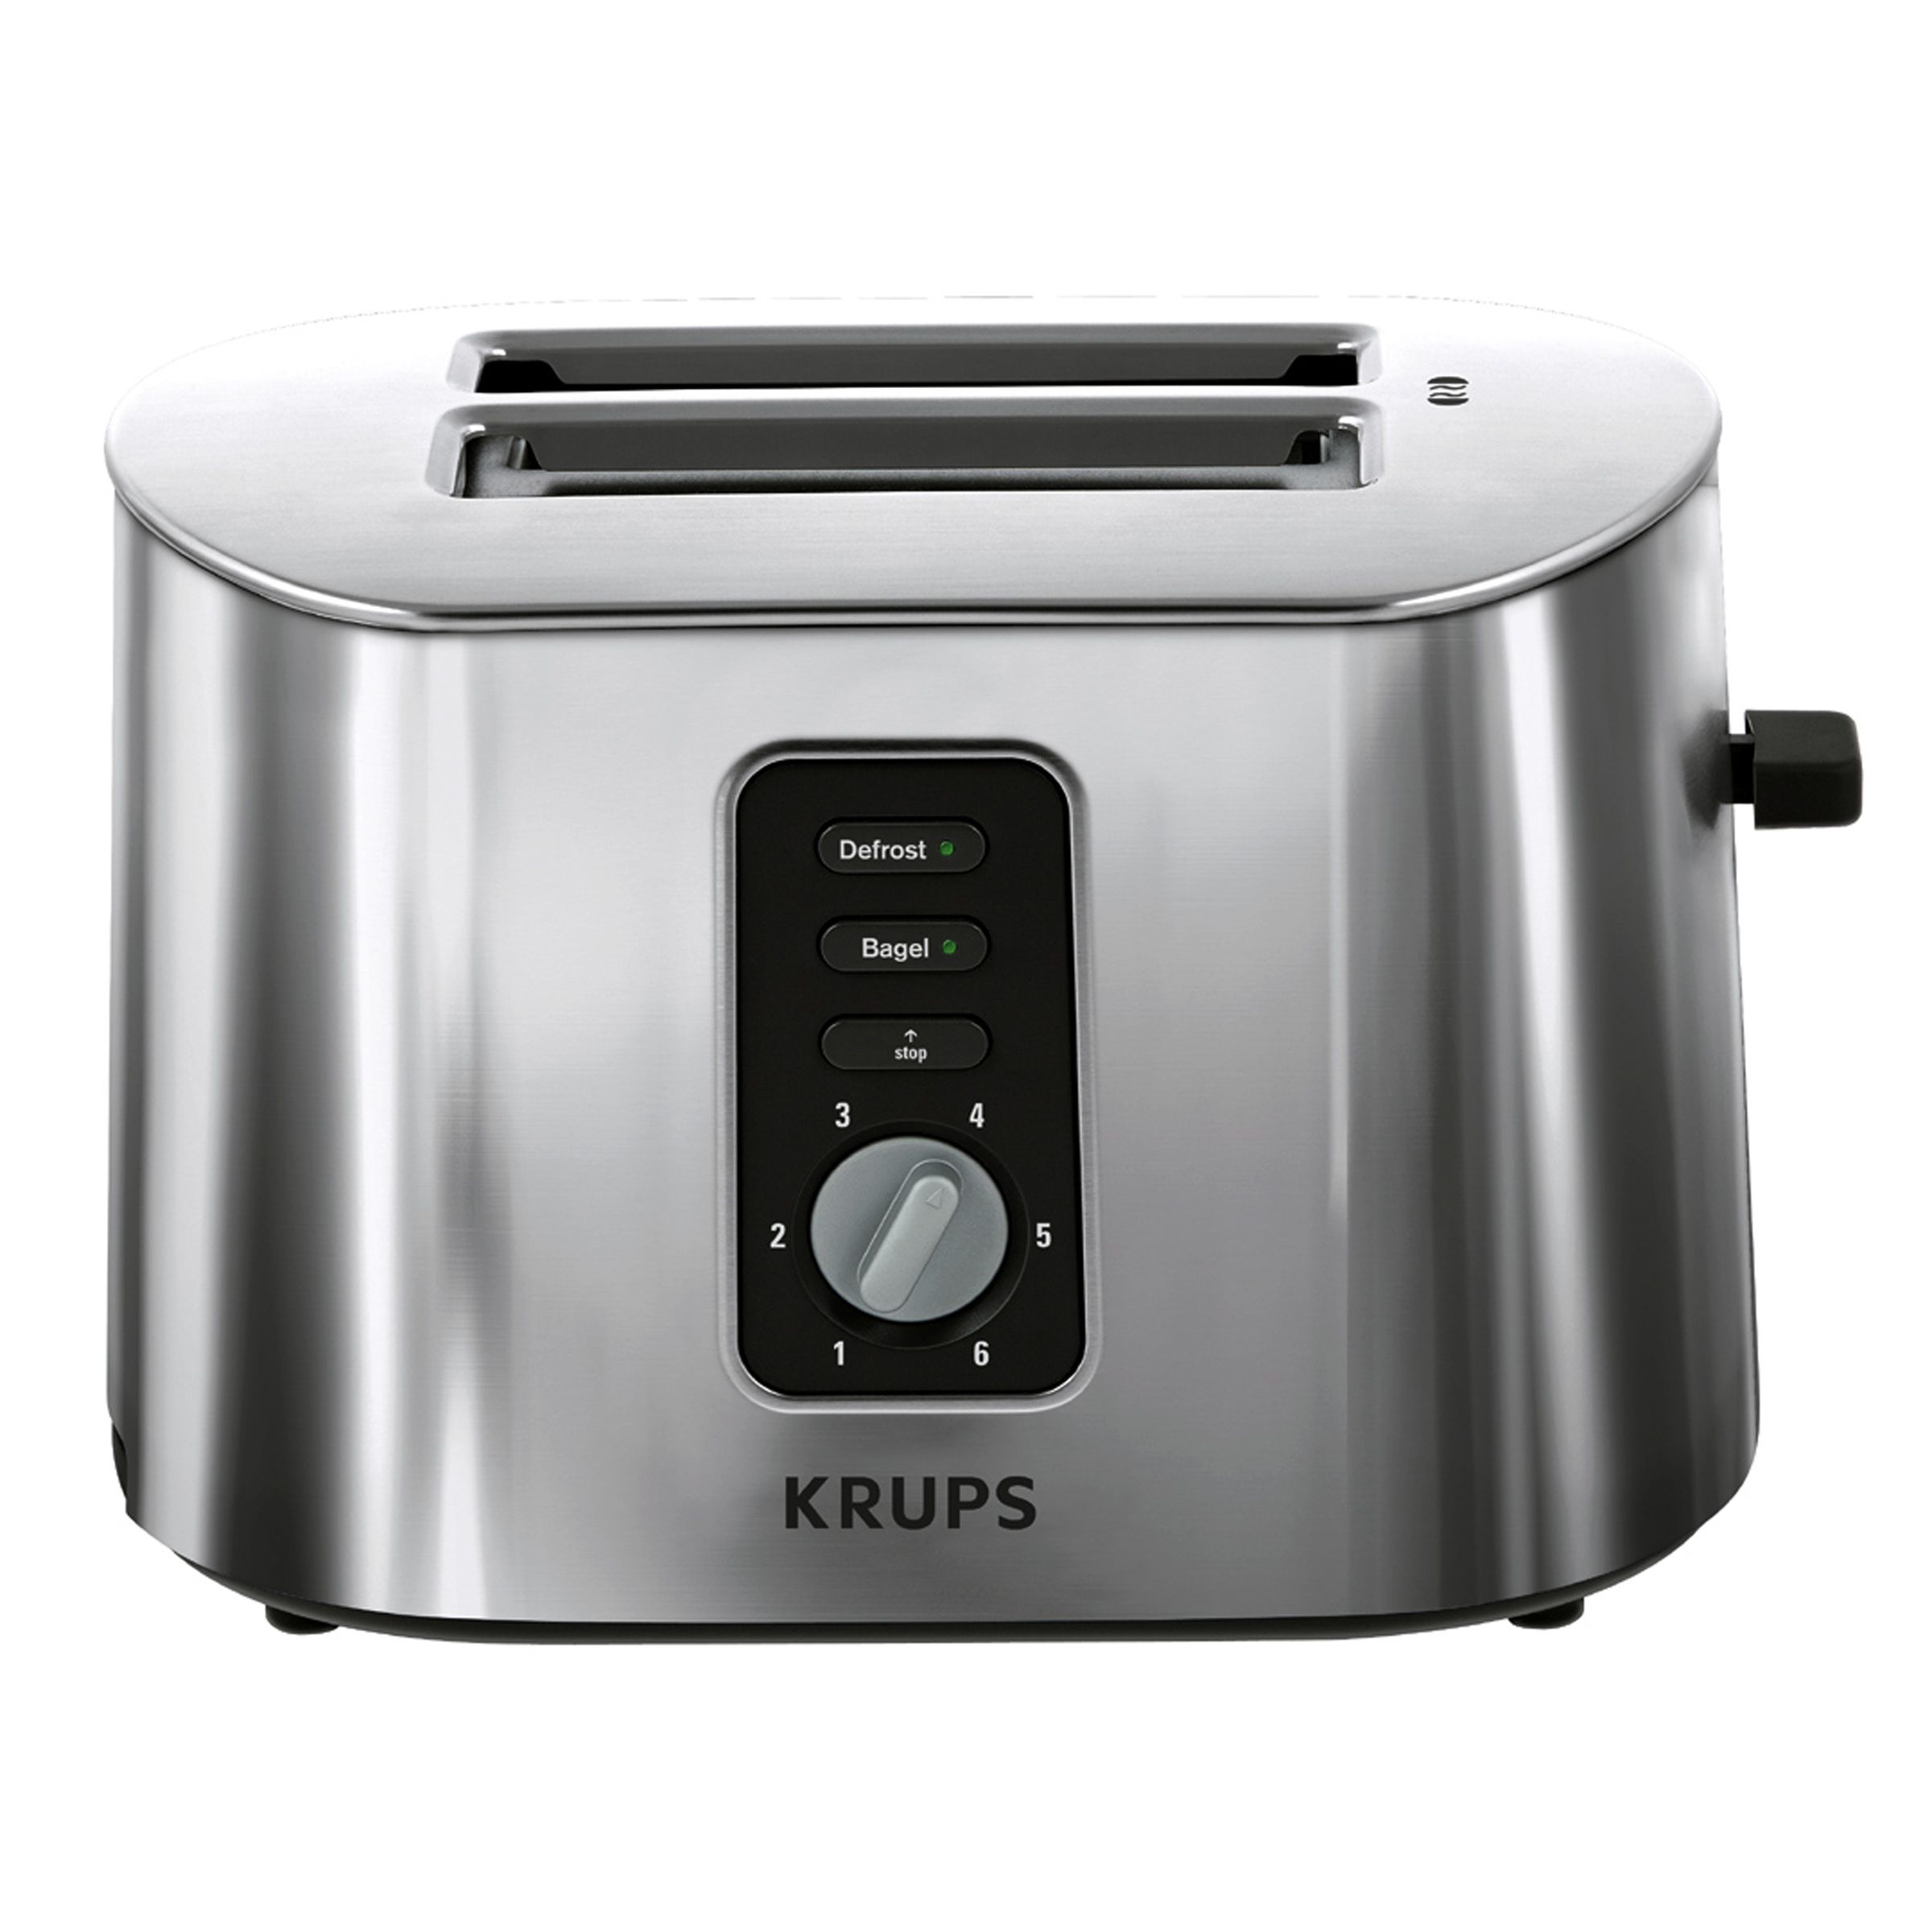 KRUPS TT6170 2-Slice Toaster - Stainless